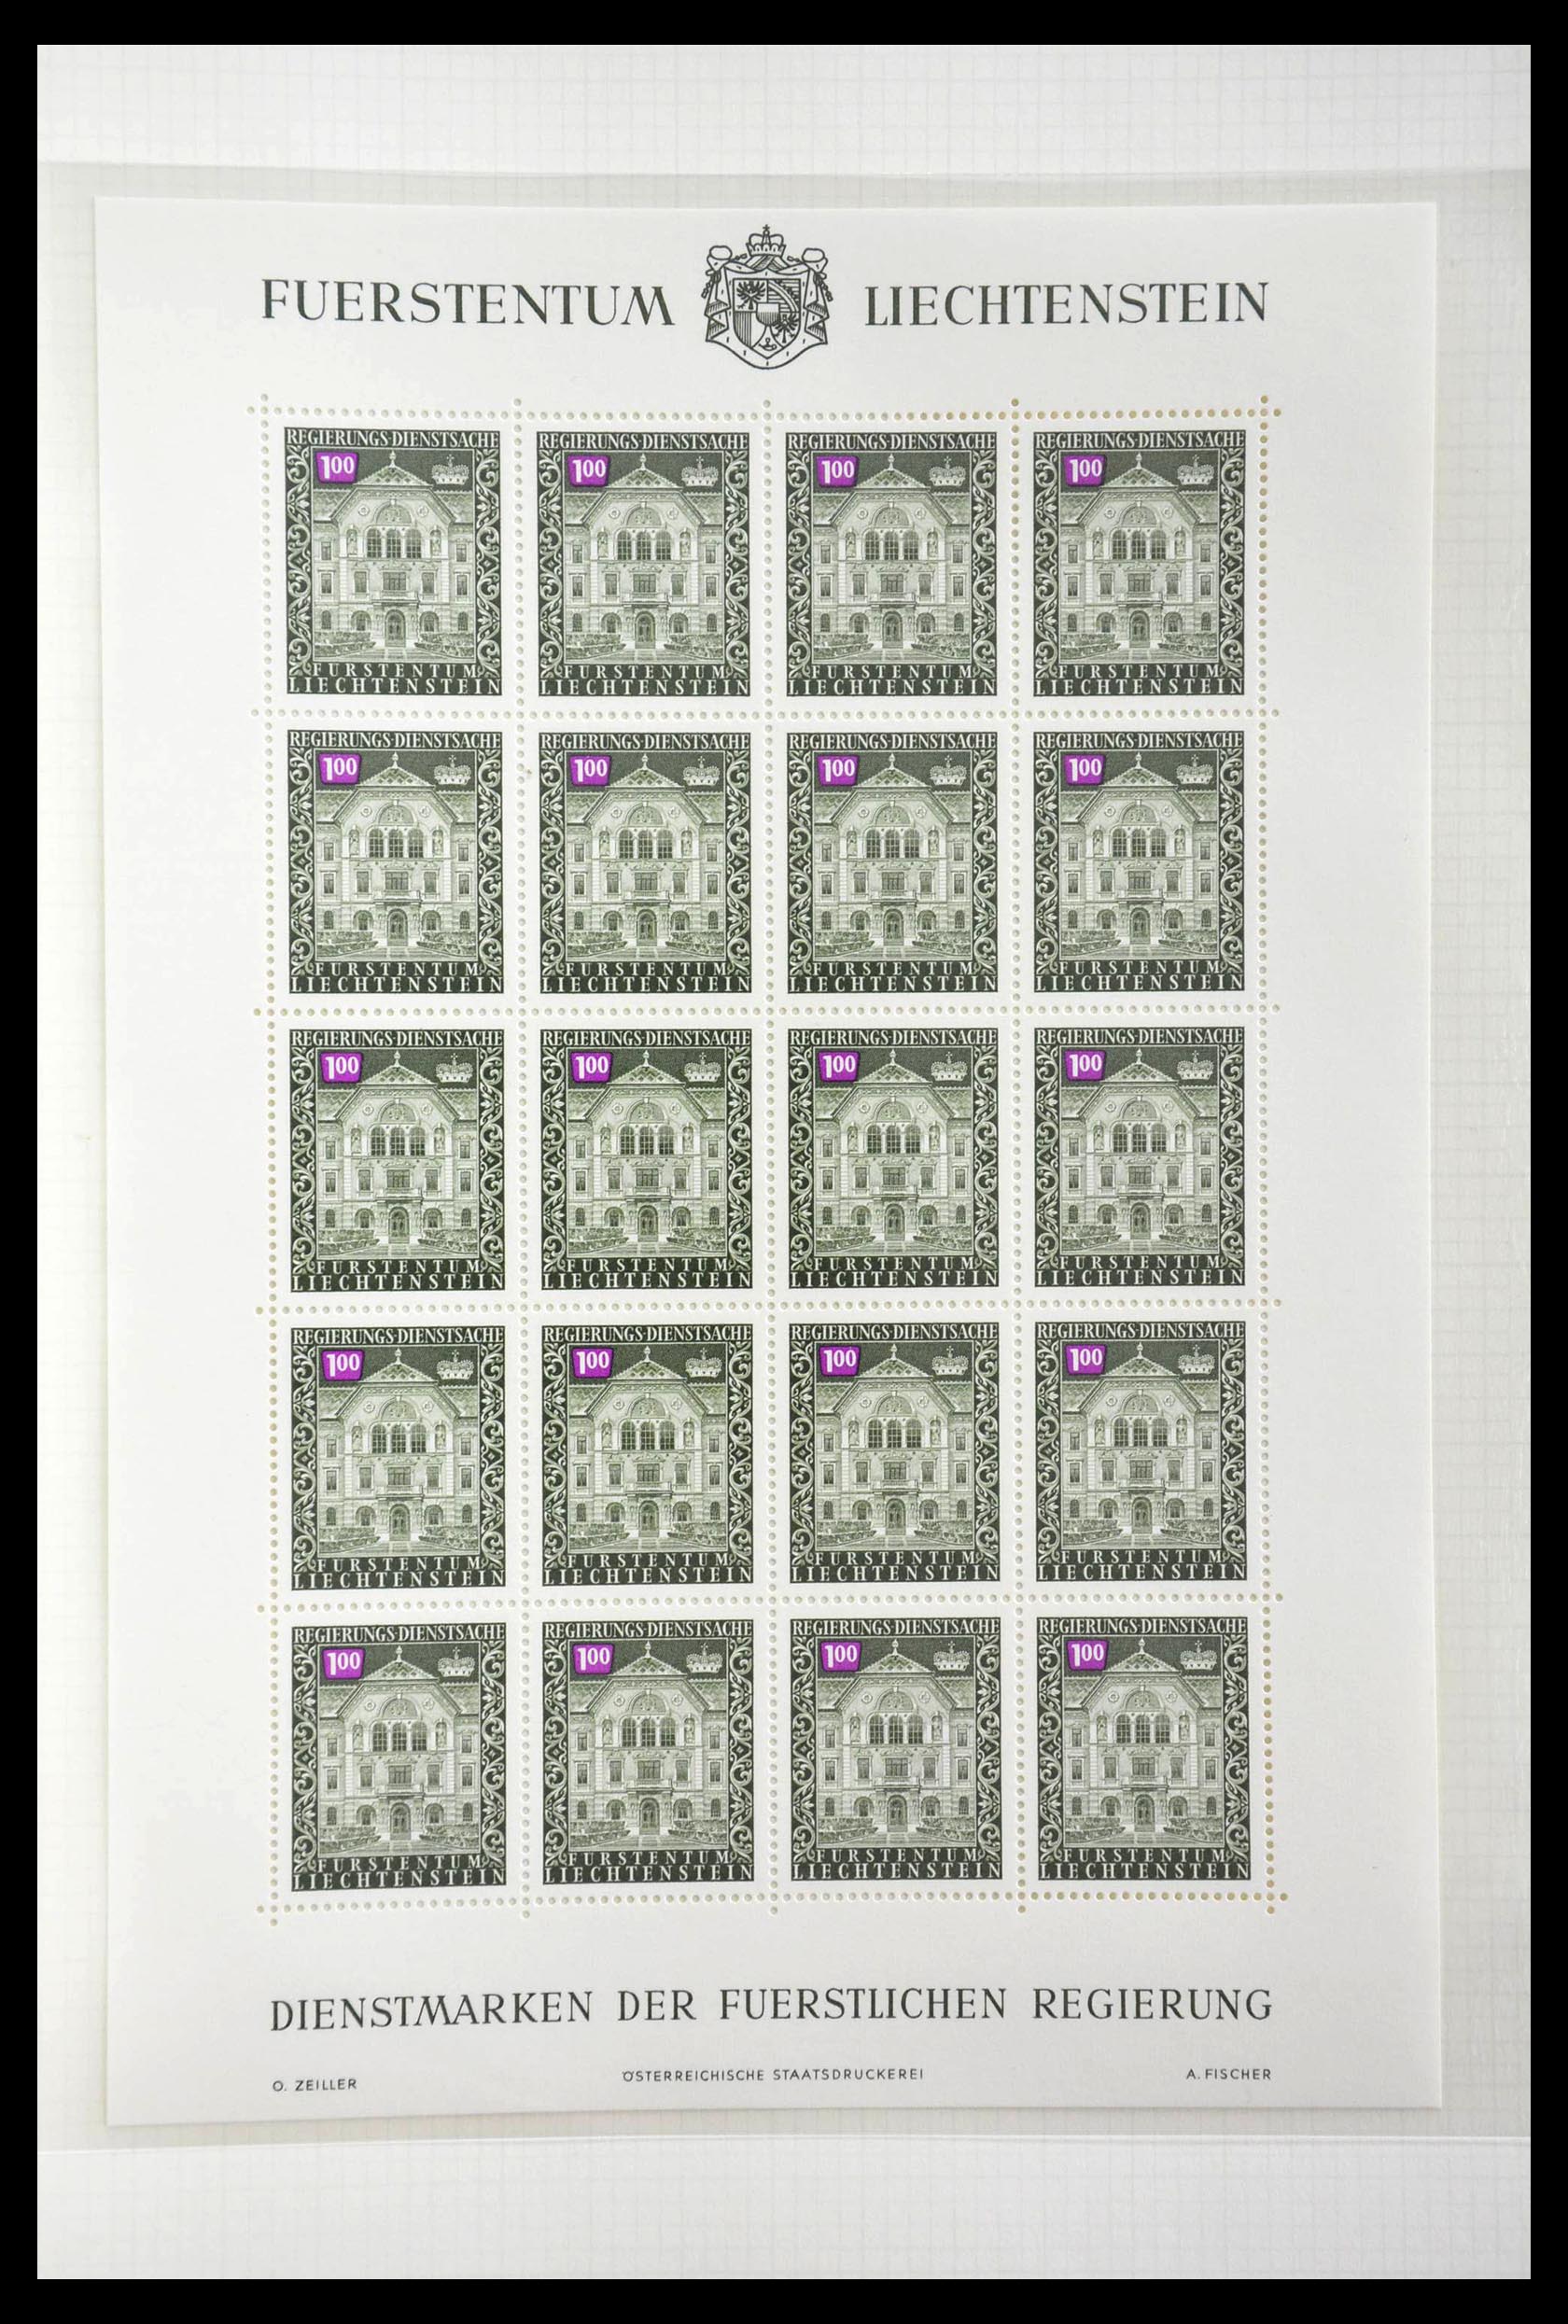 28810 421 - 28810 Liechtenstein 1939-1981 kleinbogen.